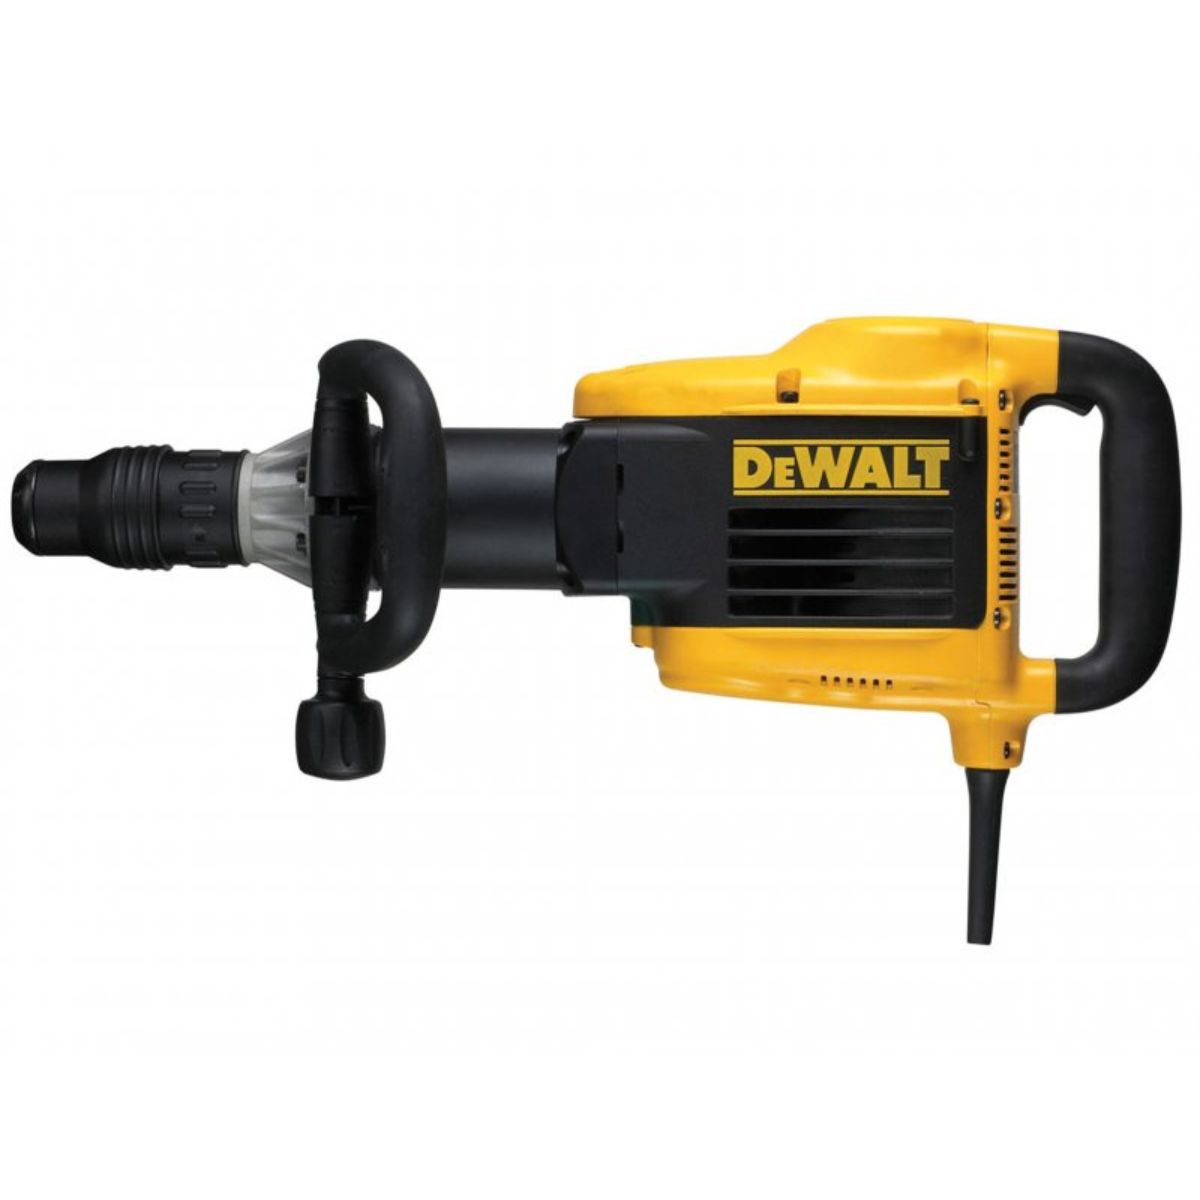 Dewalt D25899KL SDS Max Demolition Hammer 110V/1500W